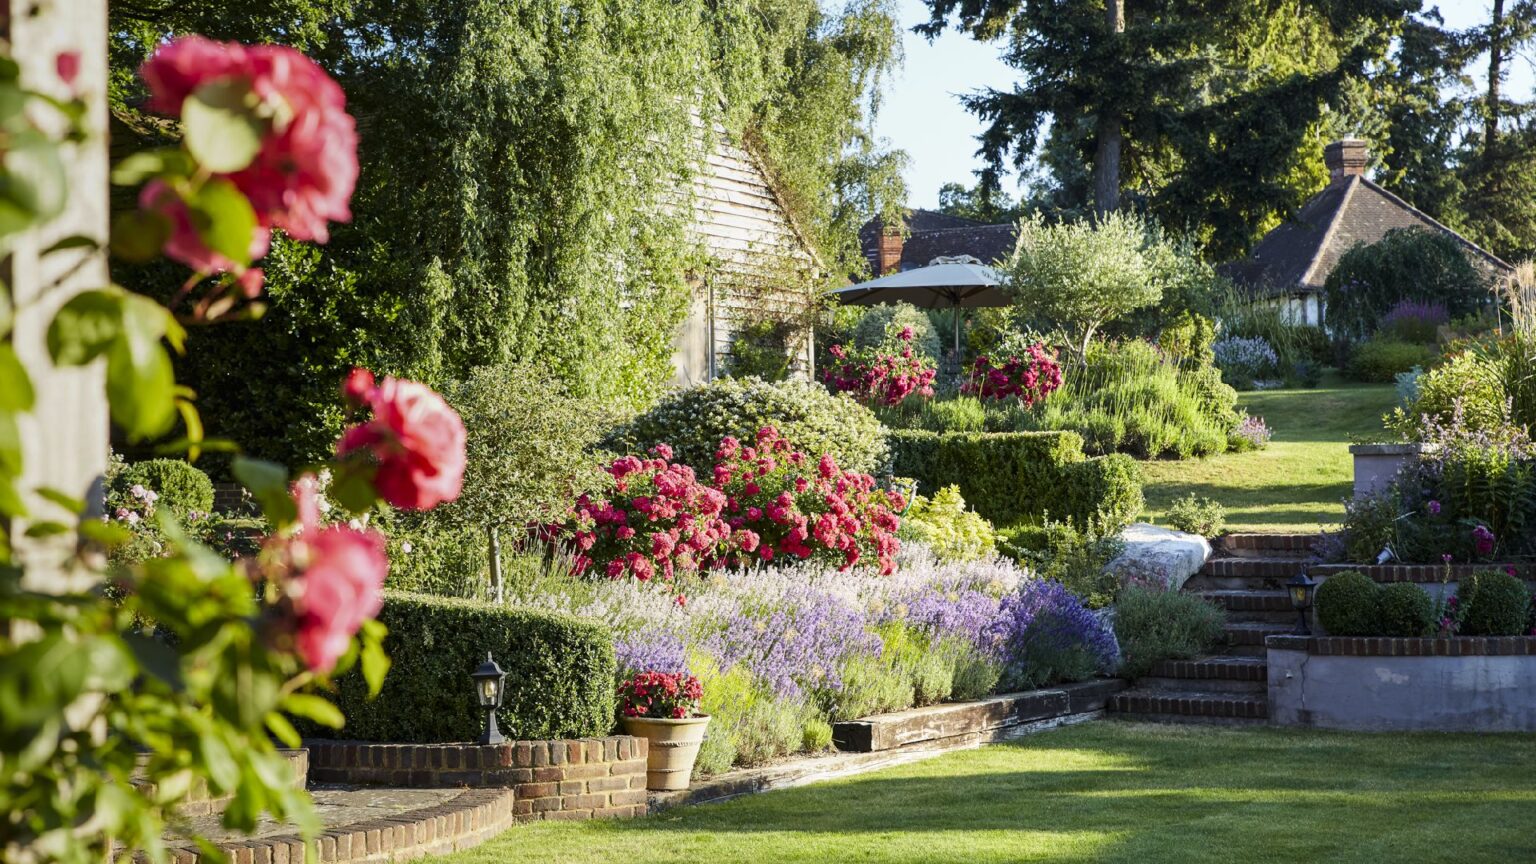 Lavender & Rose Garden – Landscape Design and Garden Project Management